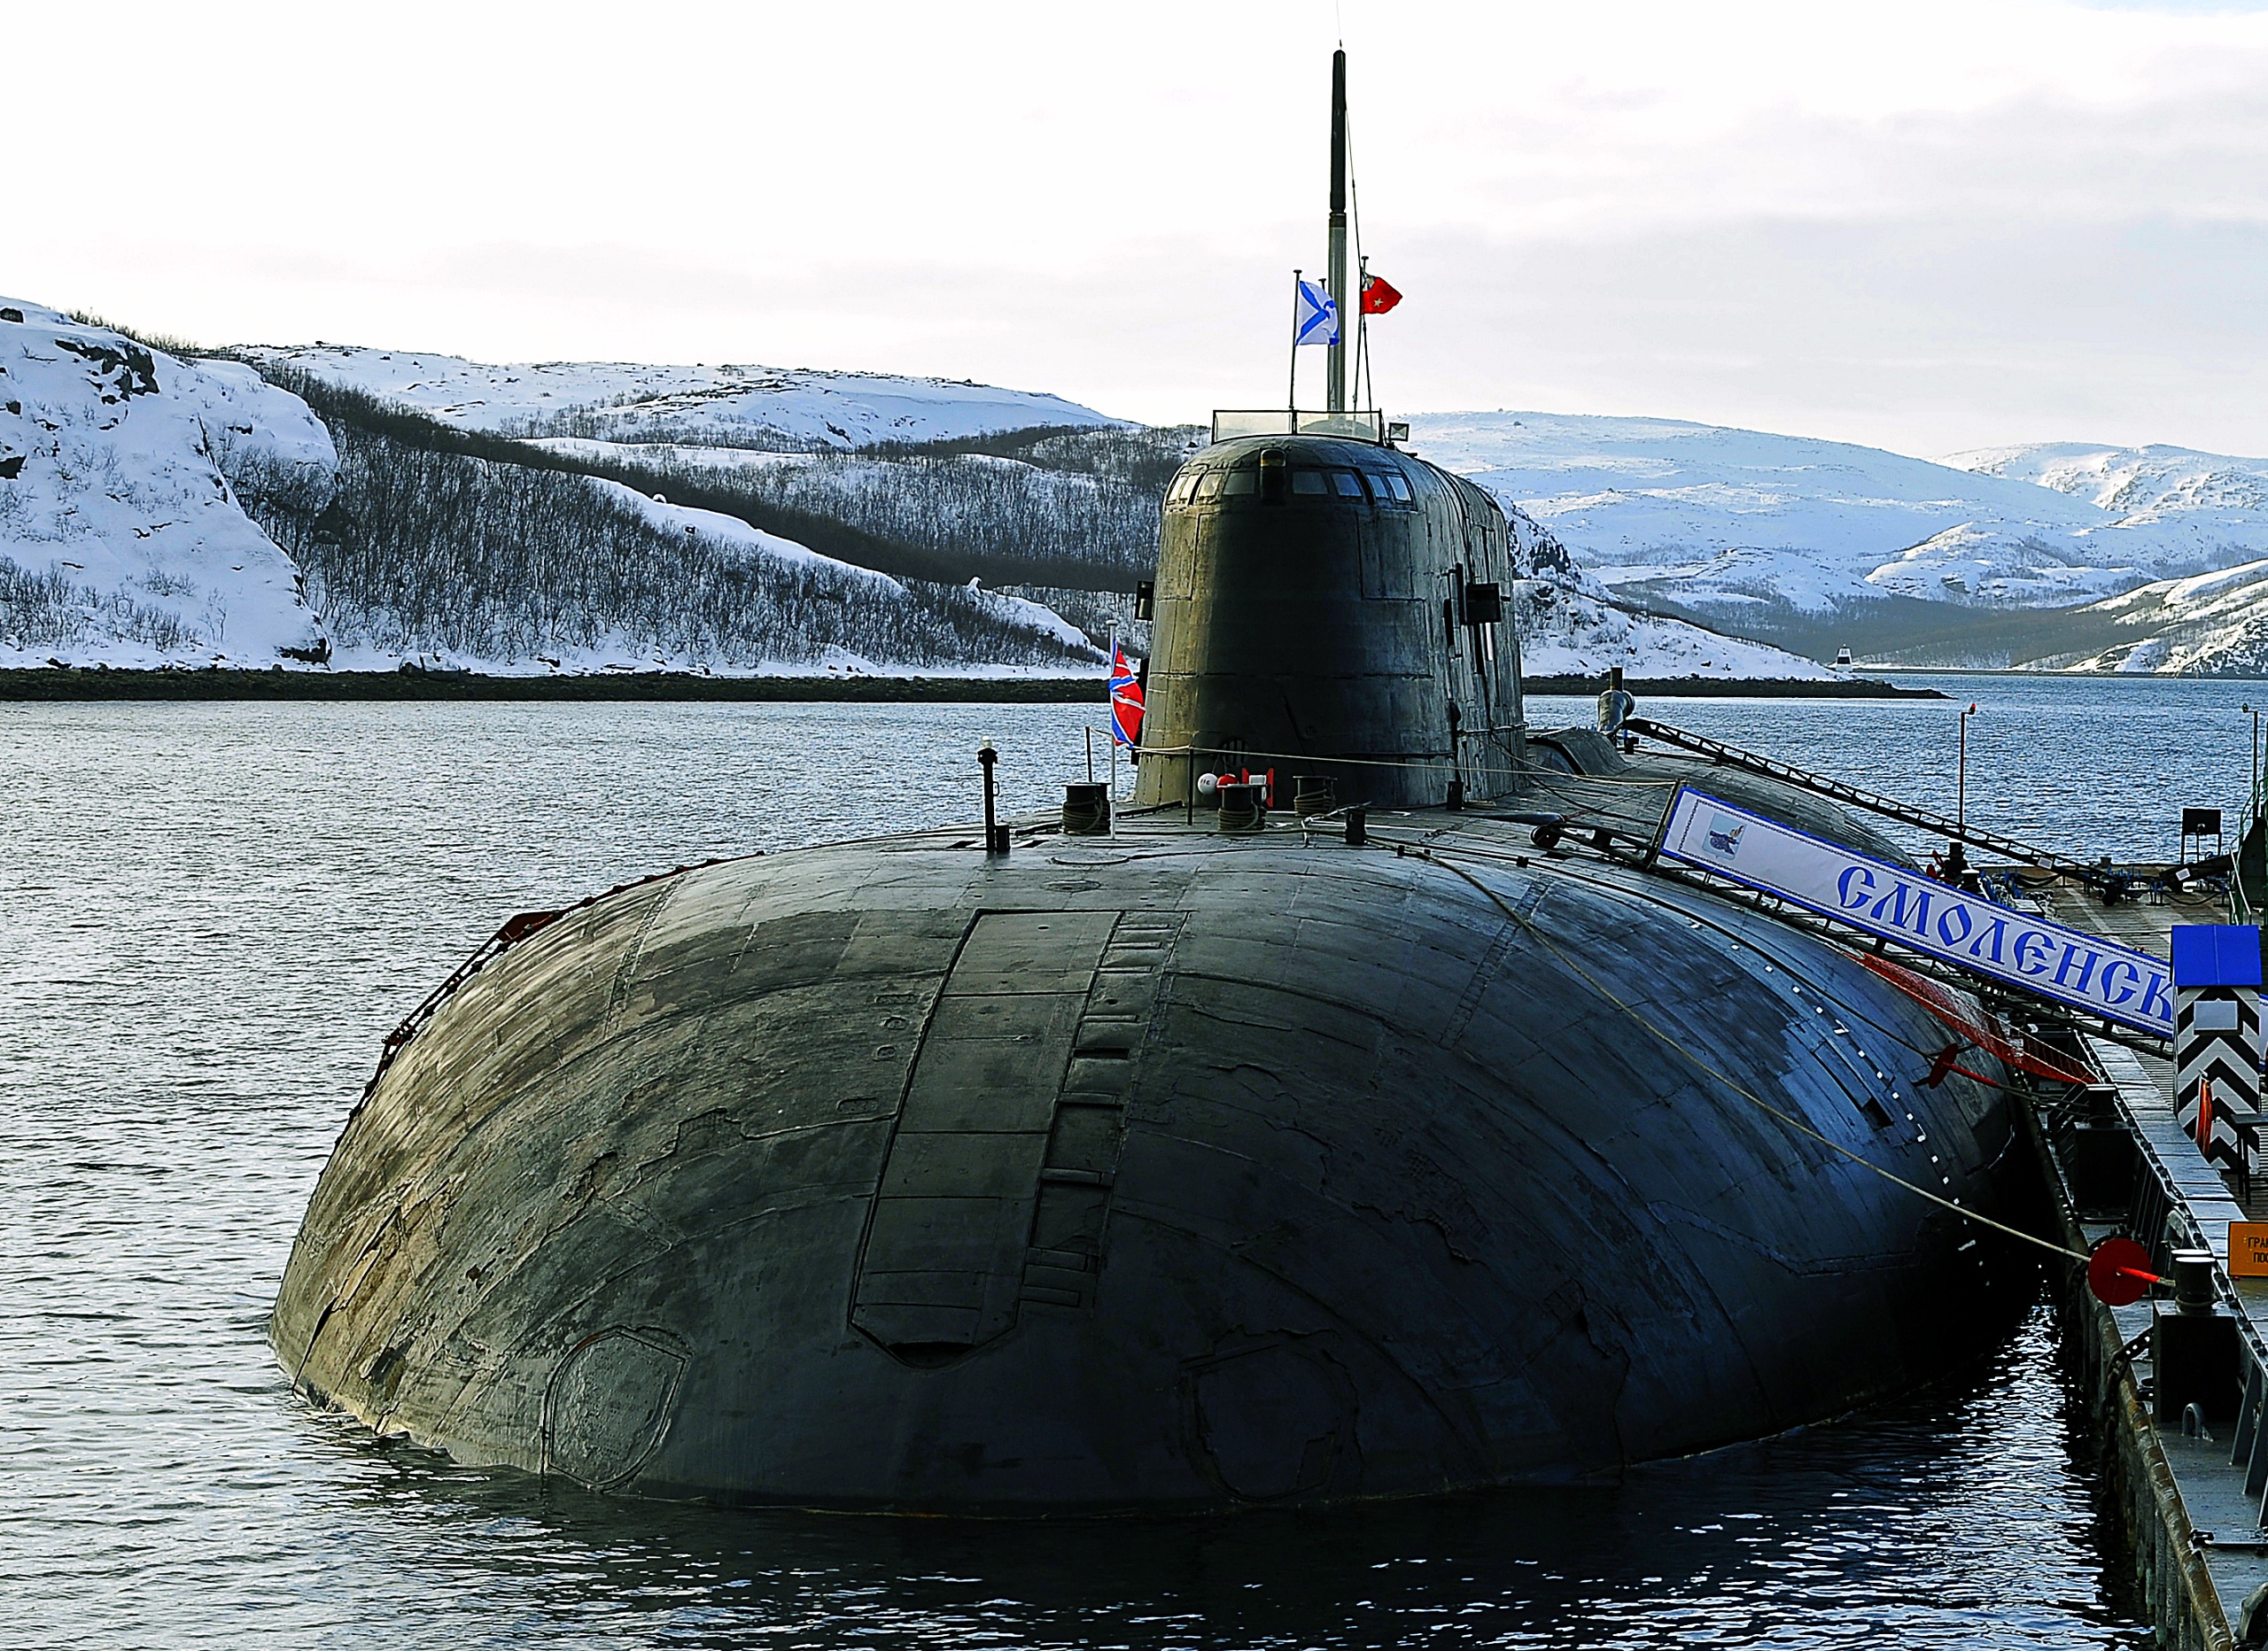 Пл ев. 949а Антей. Подводные лодки проекта 949а «Антей». АПЛ Смоленск подводная лодка. Подводные лодки проекта 949а Антей СССР.